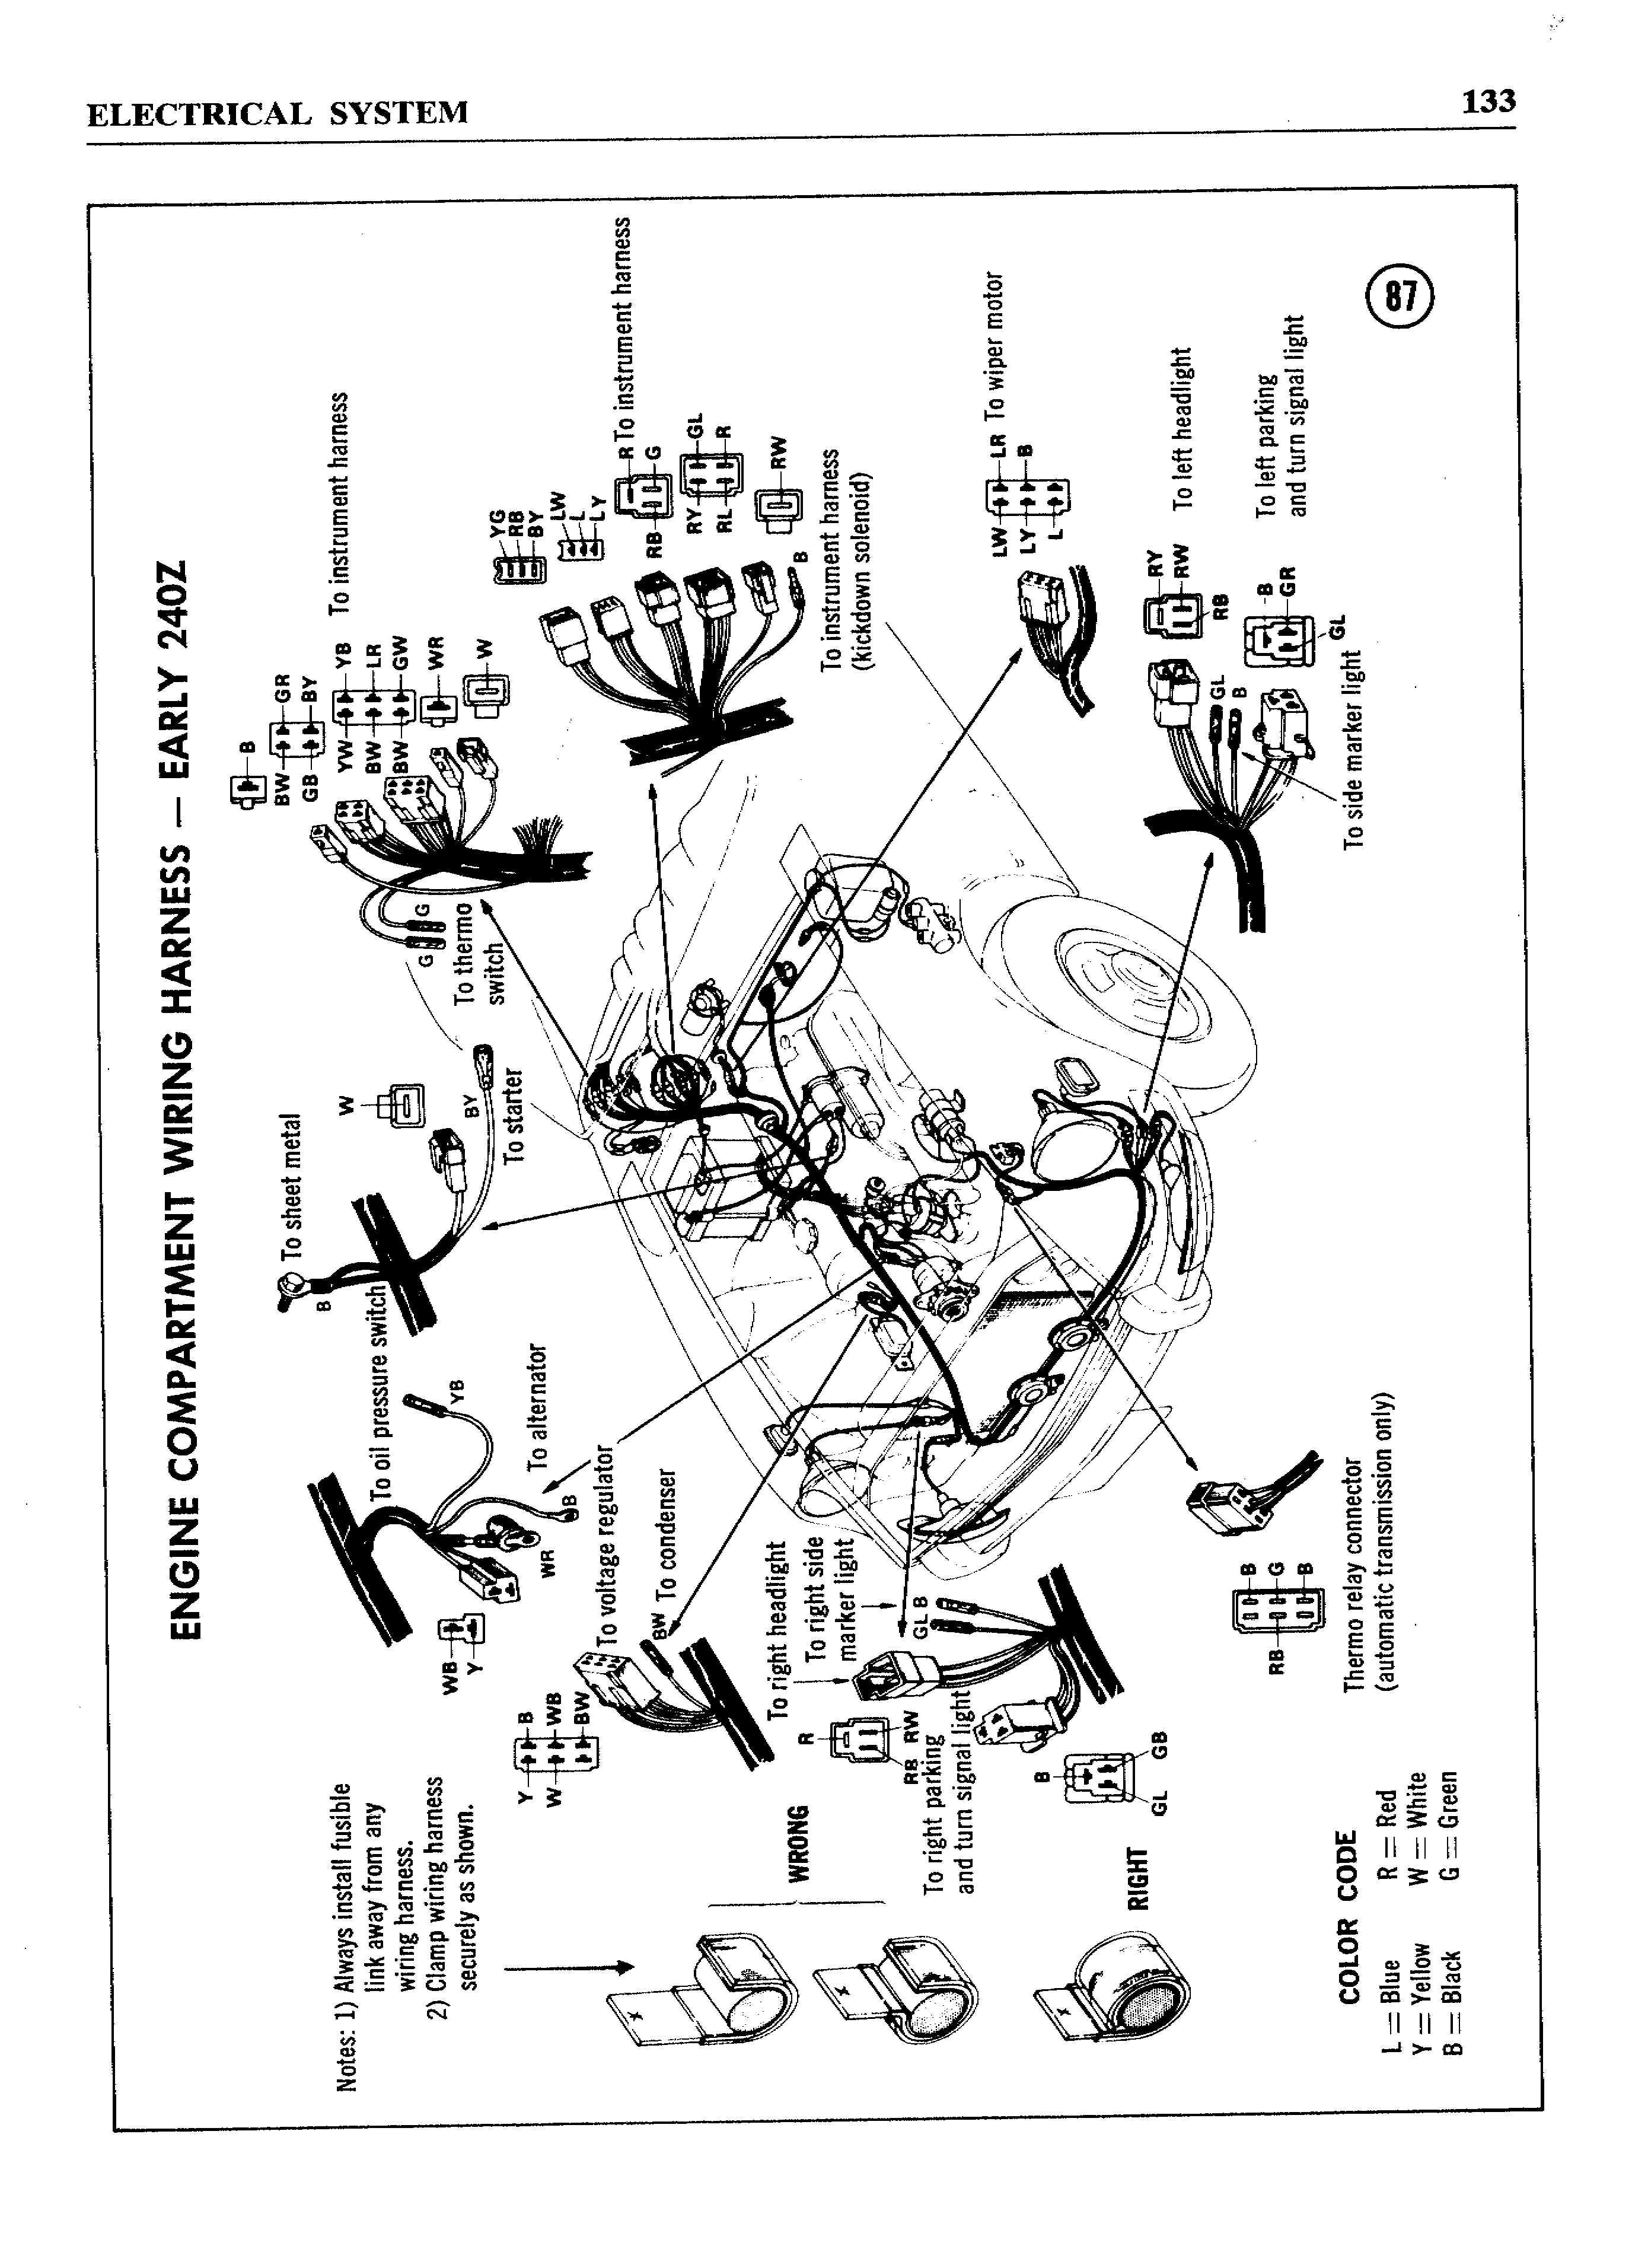 240z 1972 wiring diagram